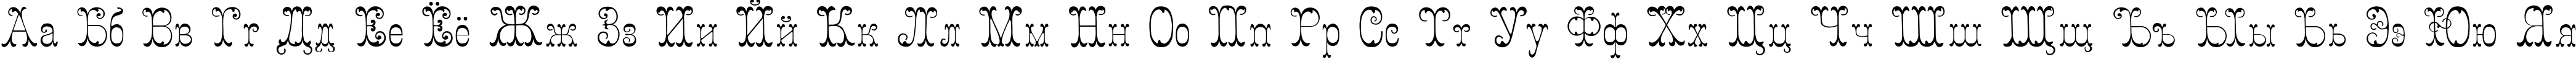 Пример написания русского алфавита шрифтом Figured